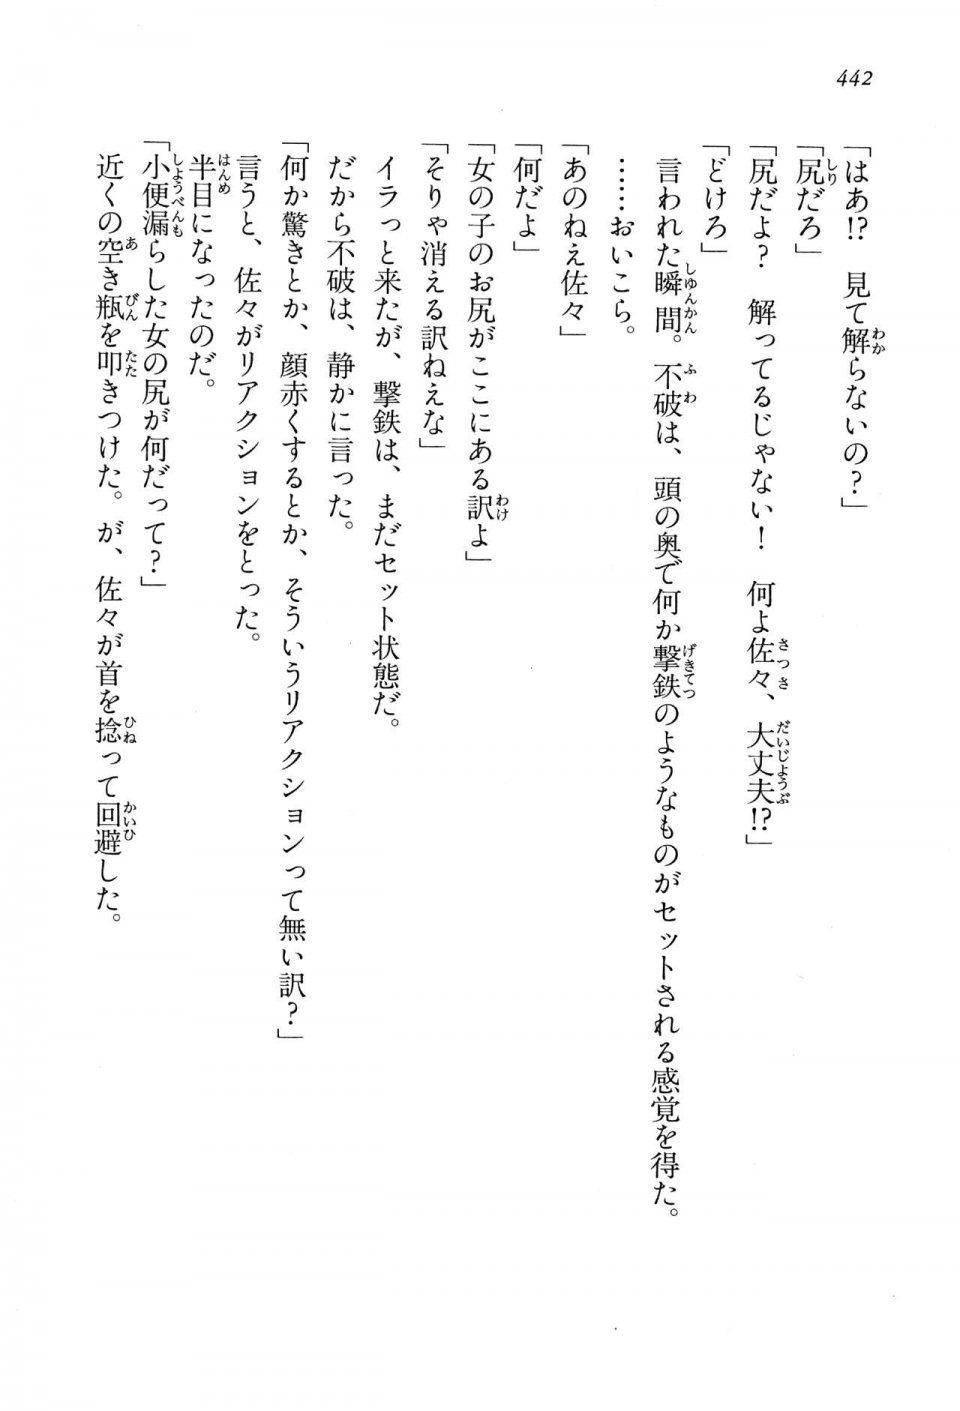 Kyoukai Senjou no Horizon LN Vol 13(6A) - Photo #442